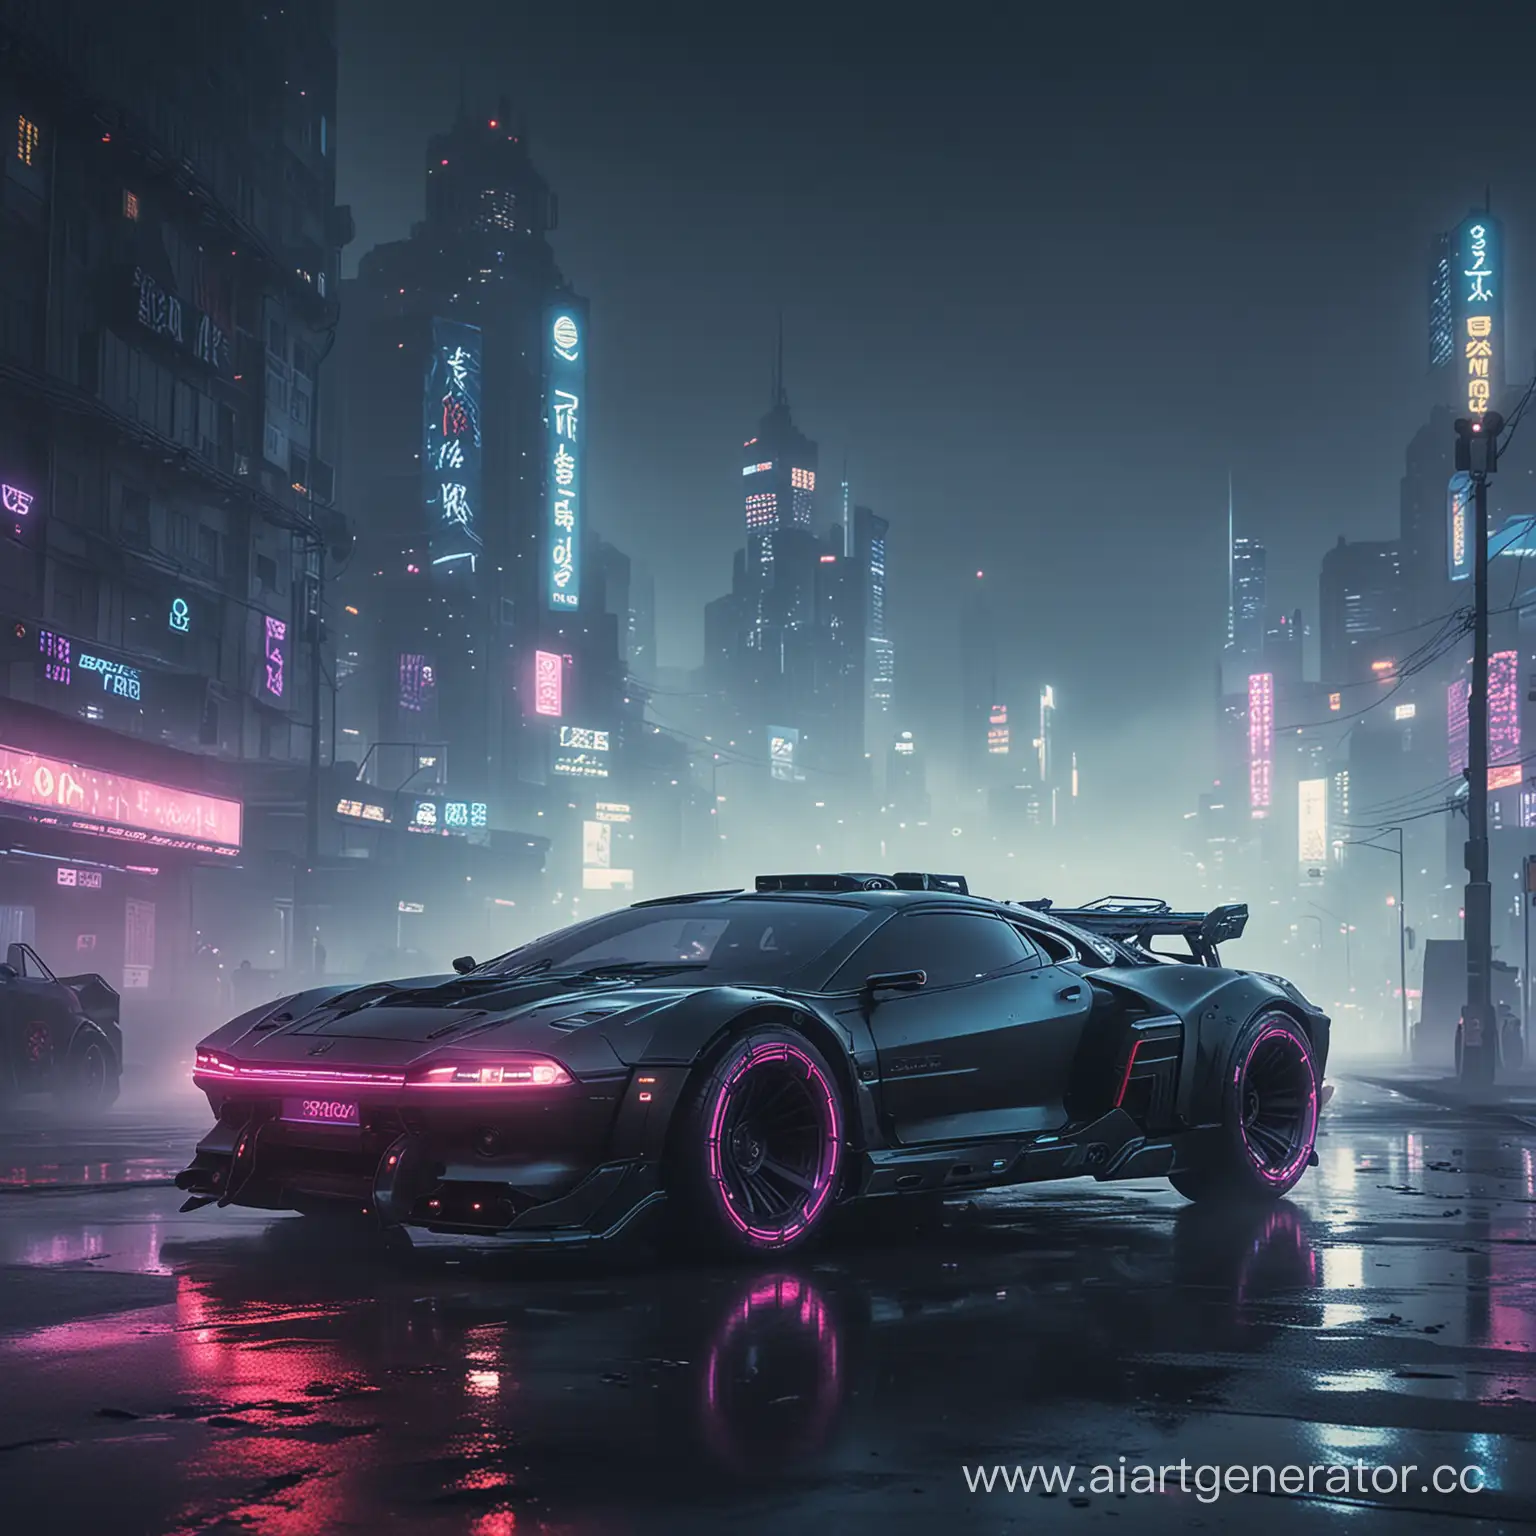 Futuristic-Cyberpunk-Cityscape-with-Neon-Drift-Car